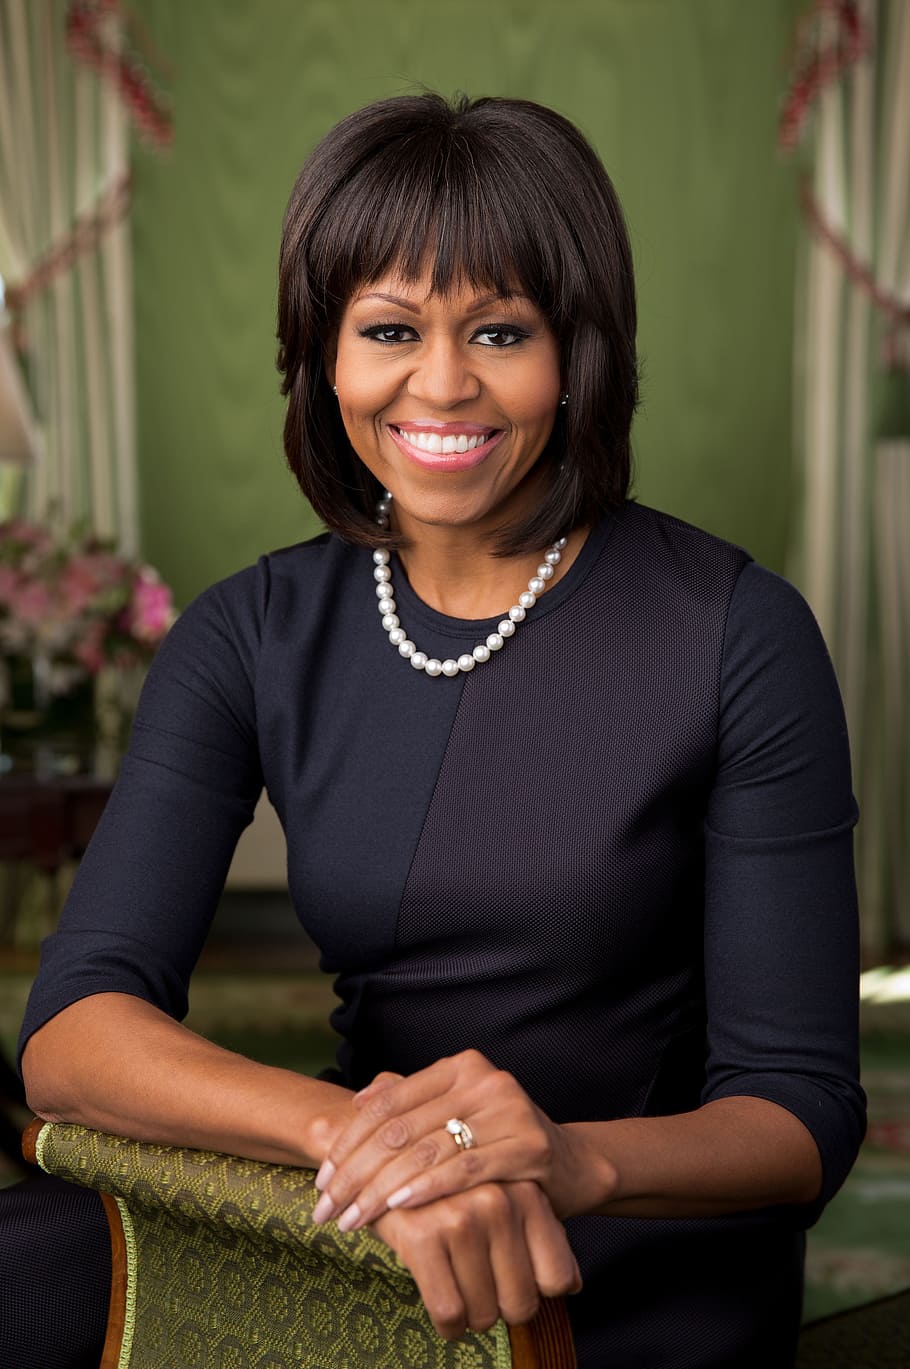 ミシェル・オバマ, 2013, 公式ポートレート, アメリカ合衆国大統領の妻, ファーストレディ, アフリカ系アメリカ人, グリーンルーム・ホワイトハウス, バラク・フセイン・オバマ, 女性, 笑顔